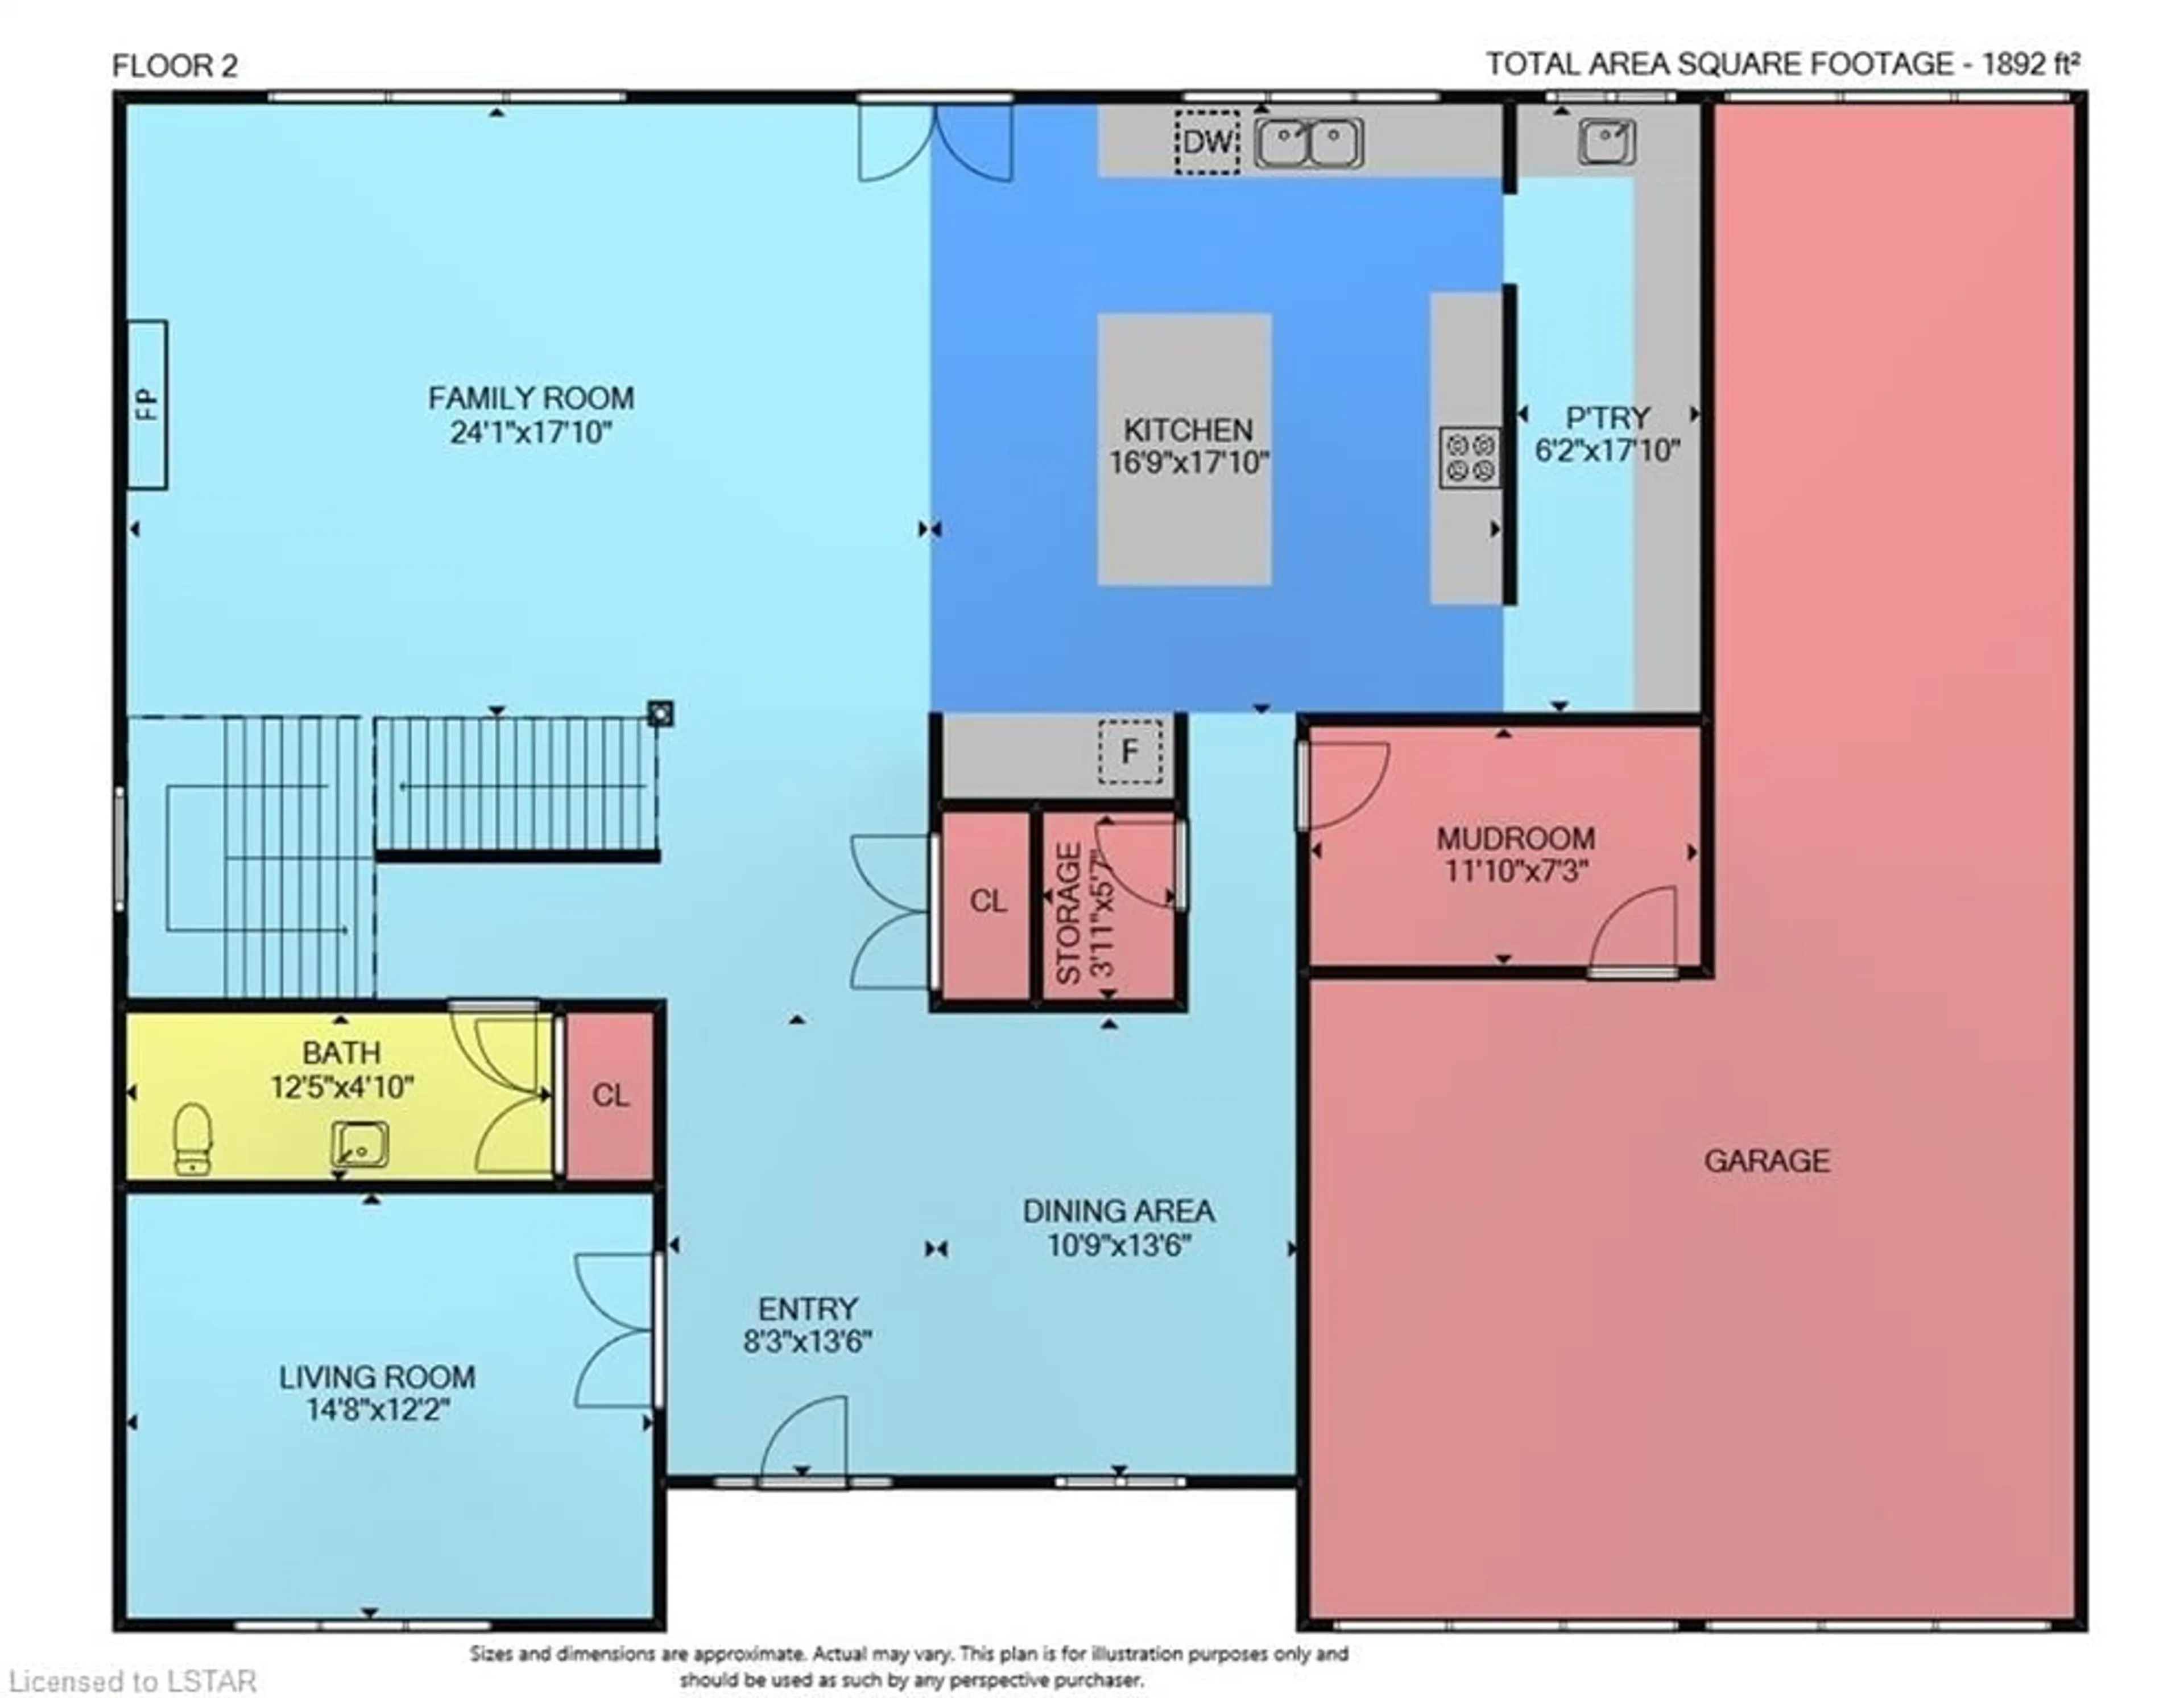 Floor plan for 3472 Silverleaf Chase, London Ontario N6P 0G8